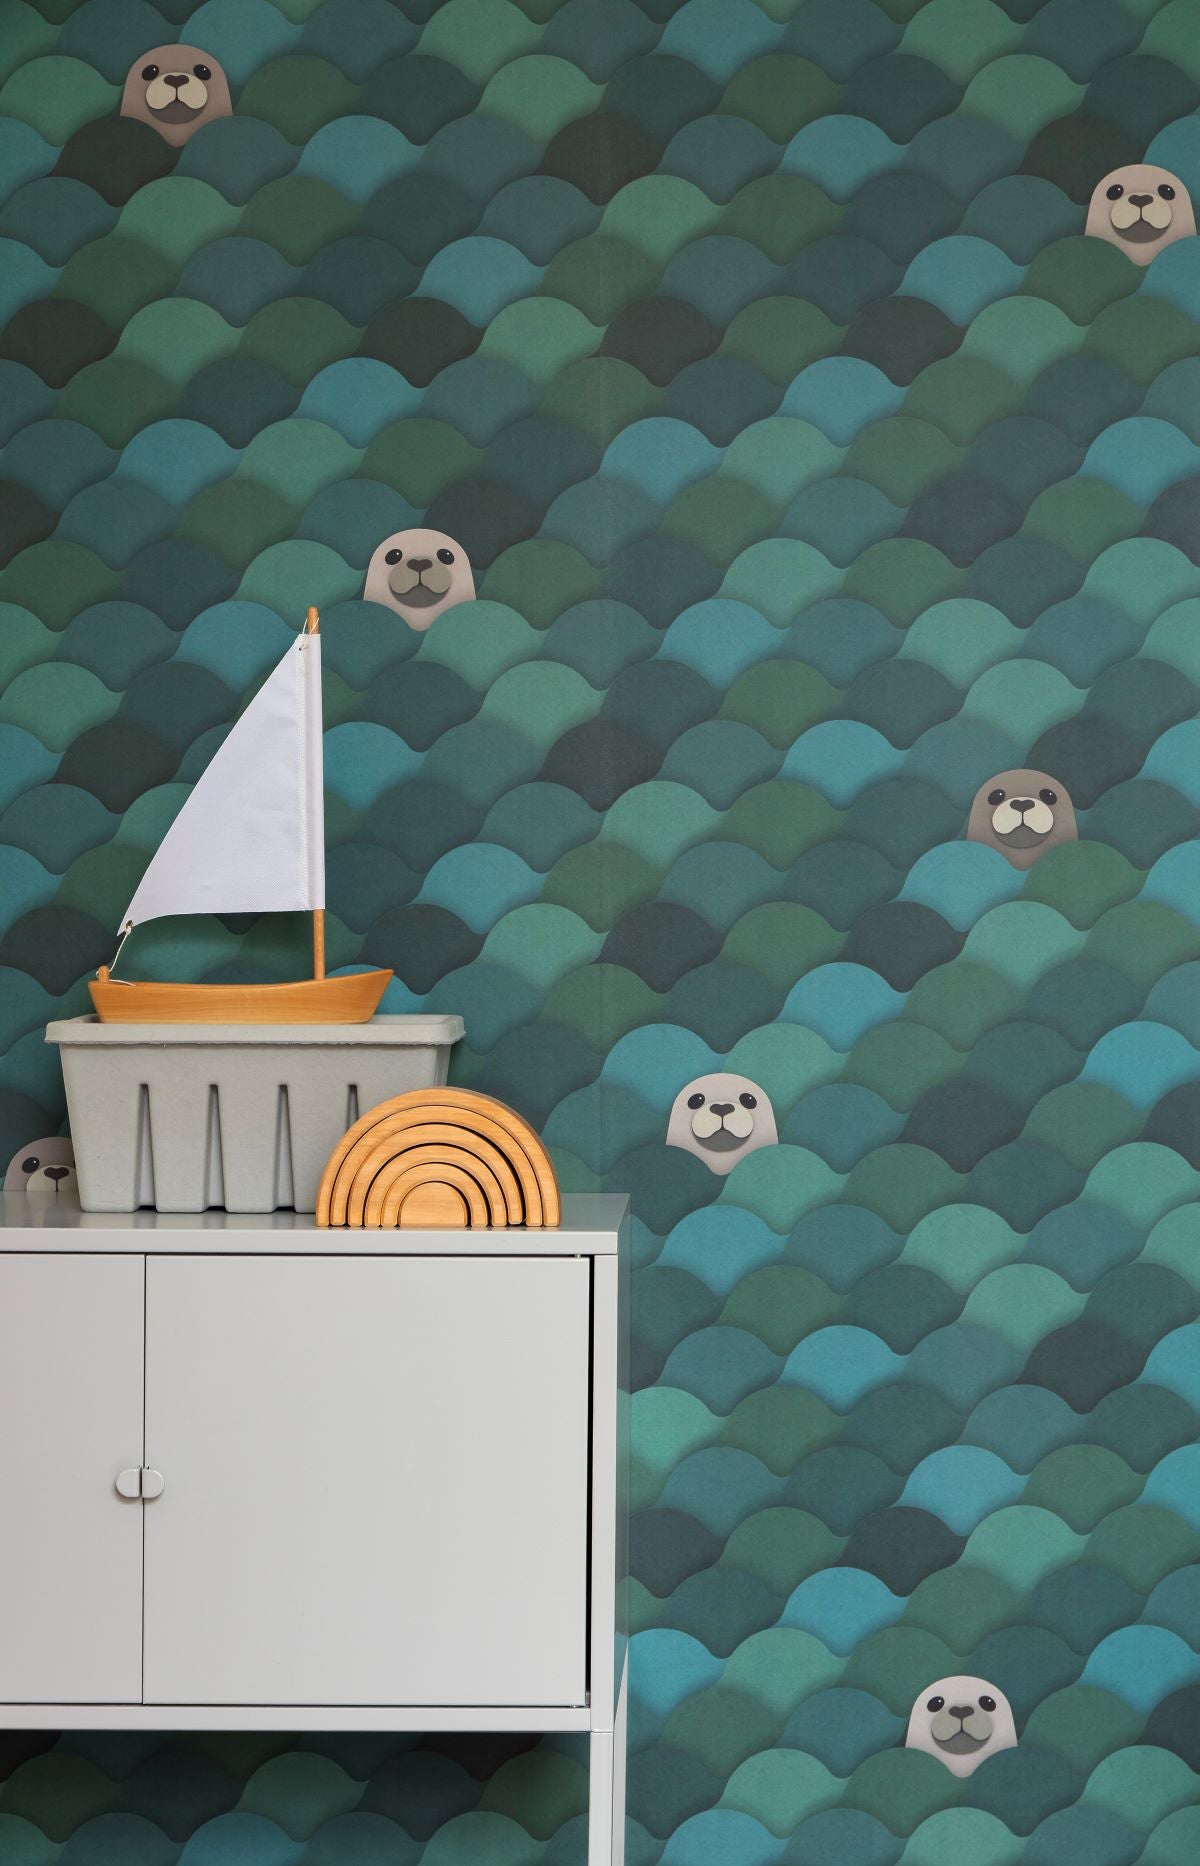 Studio Ditte kinderbehang zeehonden blauw groen